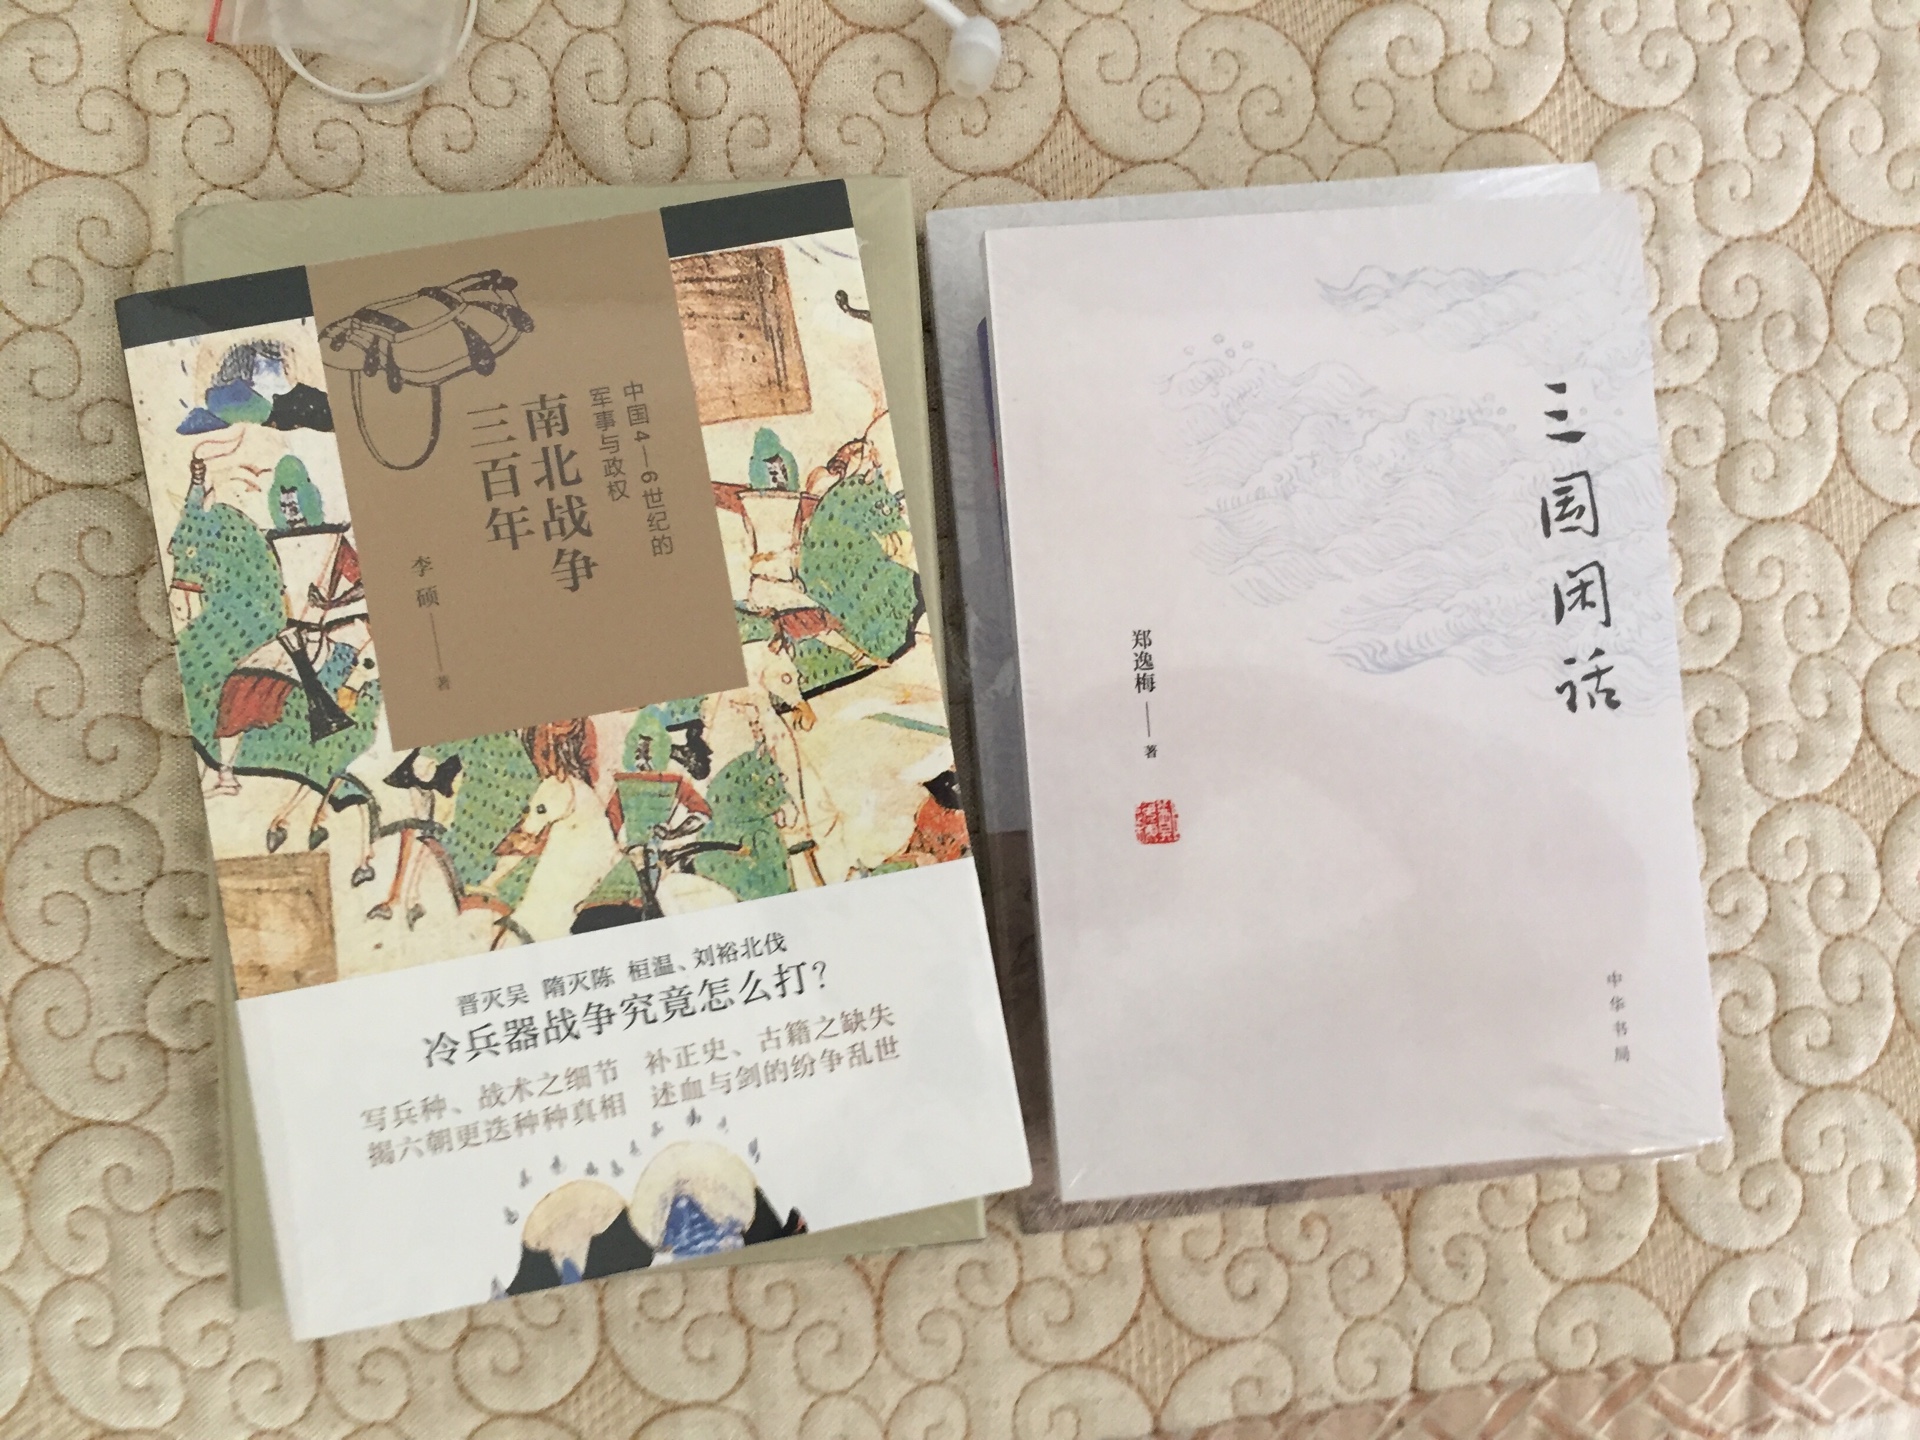 李硕的博士论文 开辟新领域 有新视角 了解中古军事史政治史的必备 值得阅读